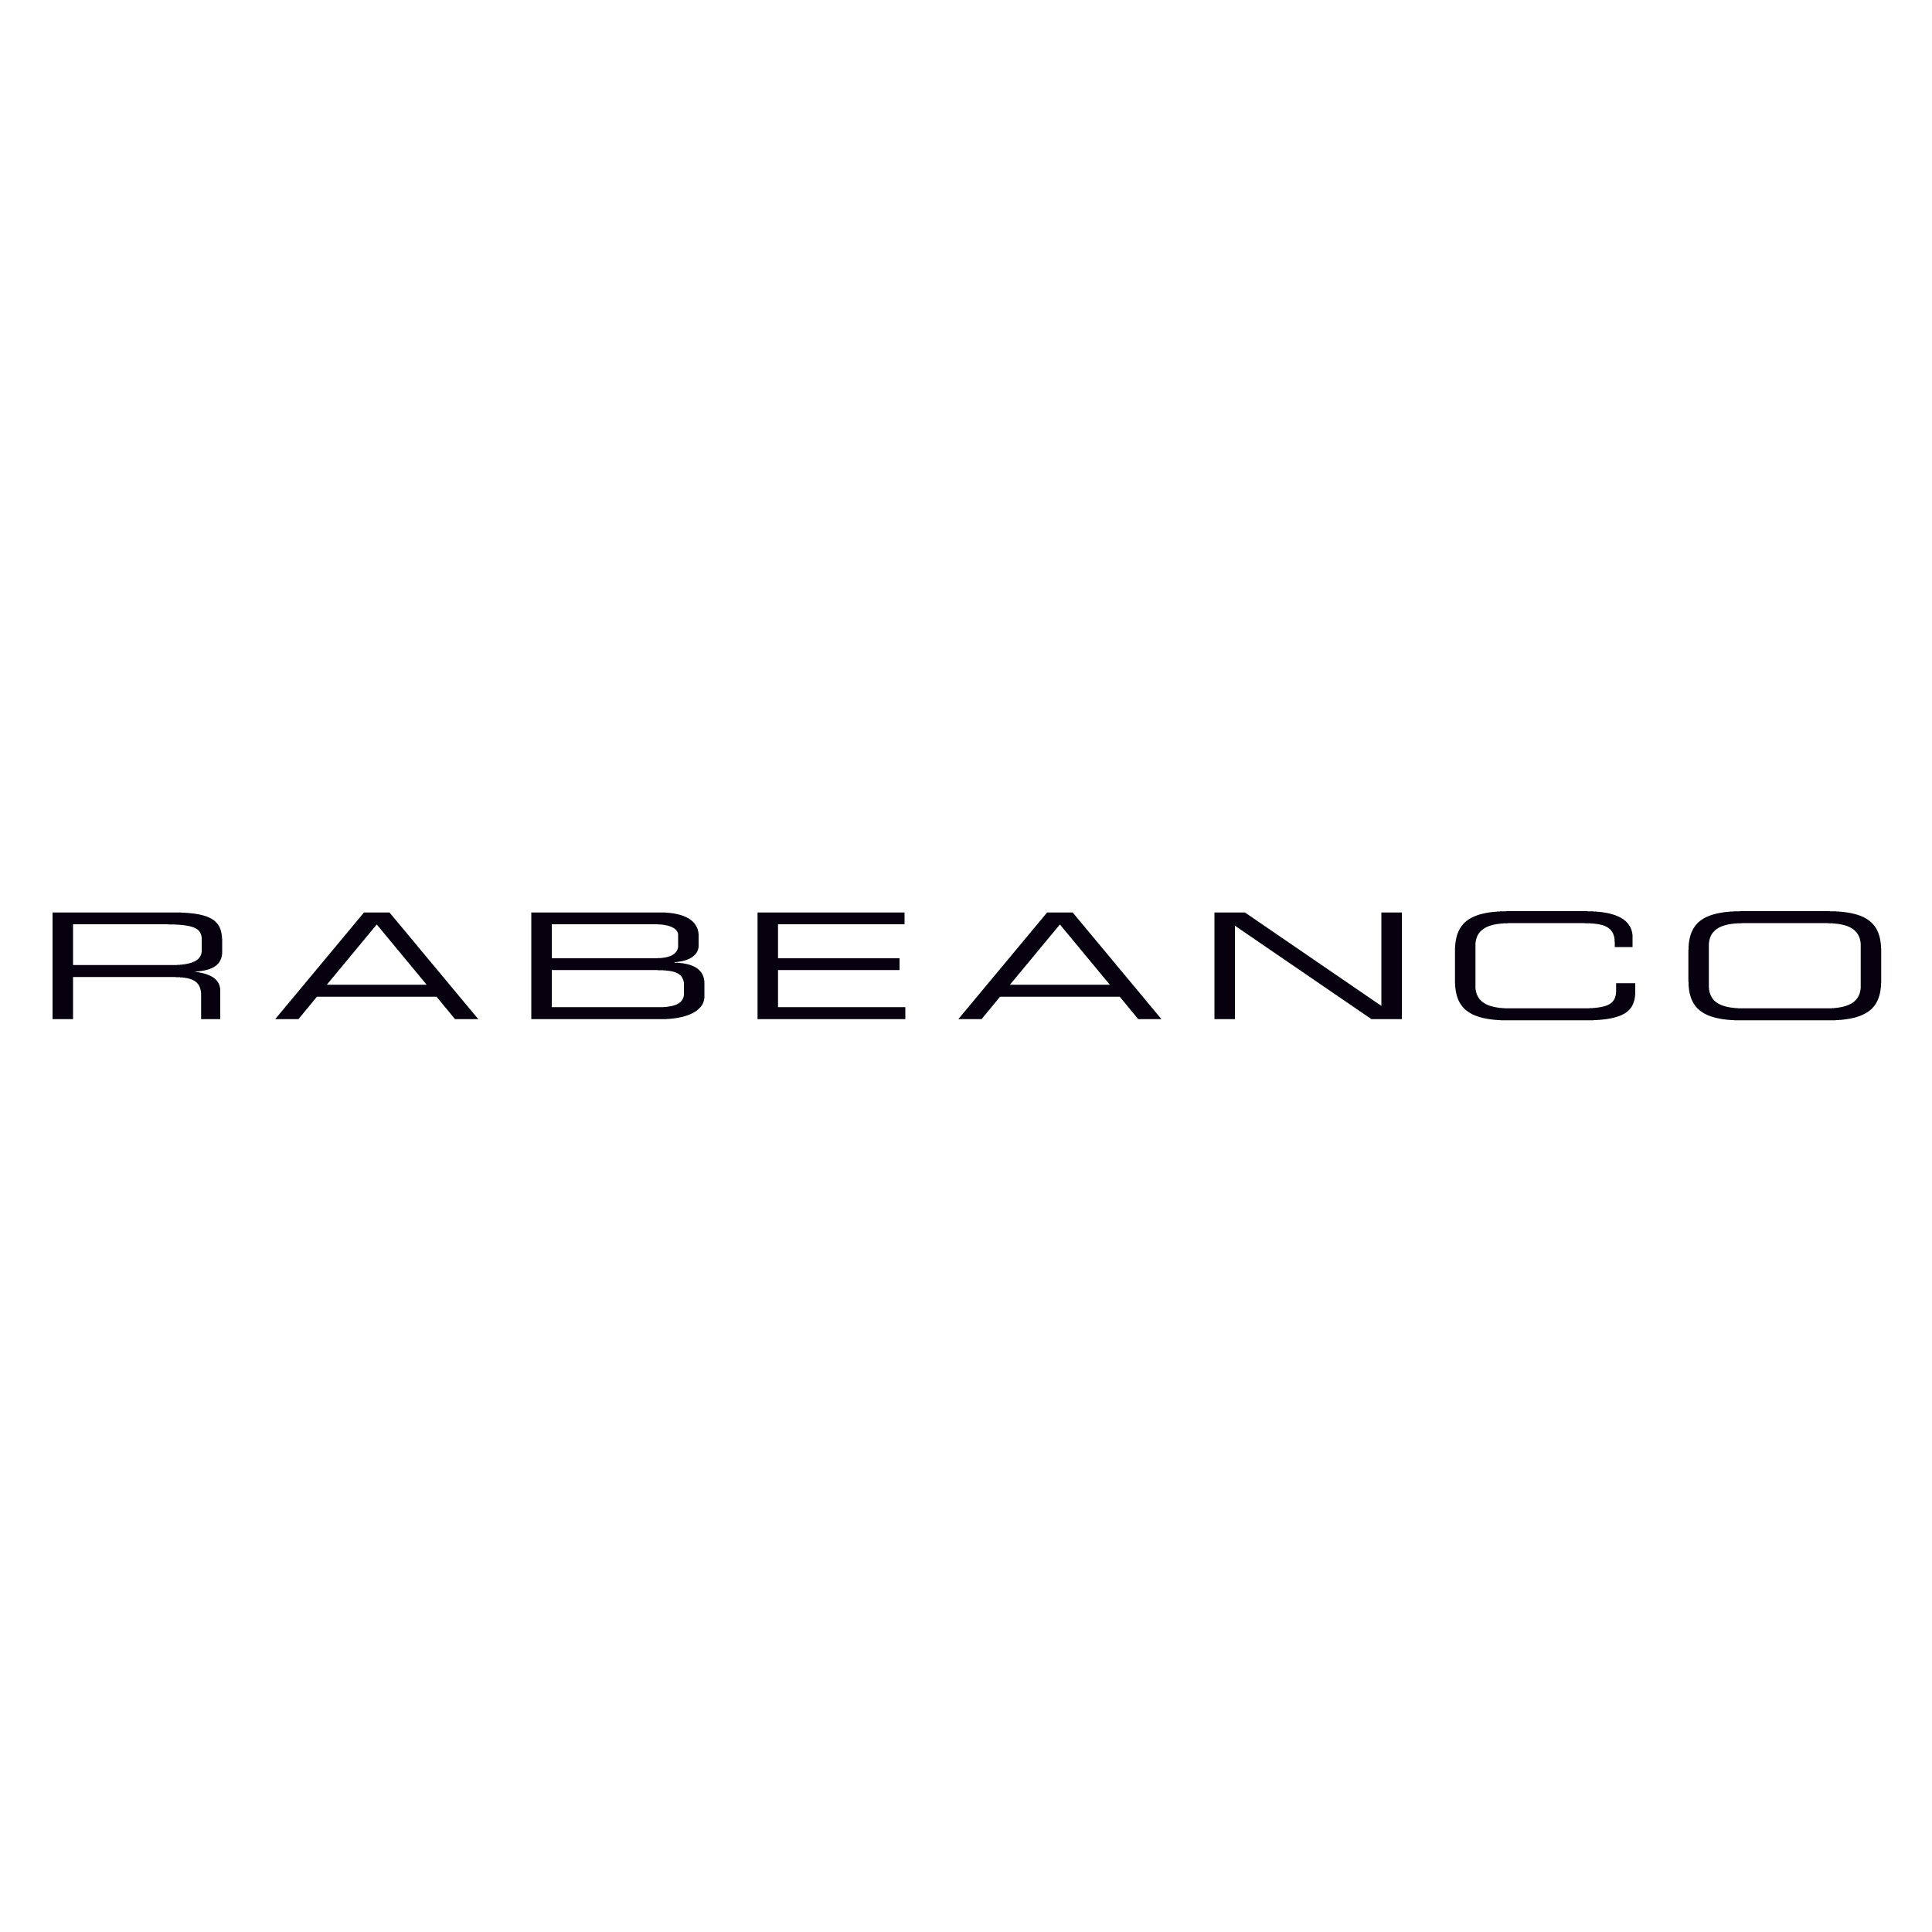 Rabeanco logo - 2500px x 2500px.jpg